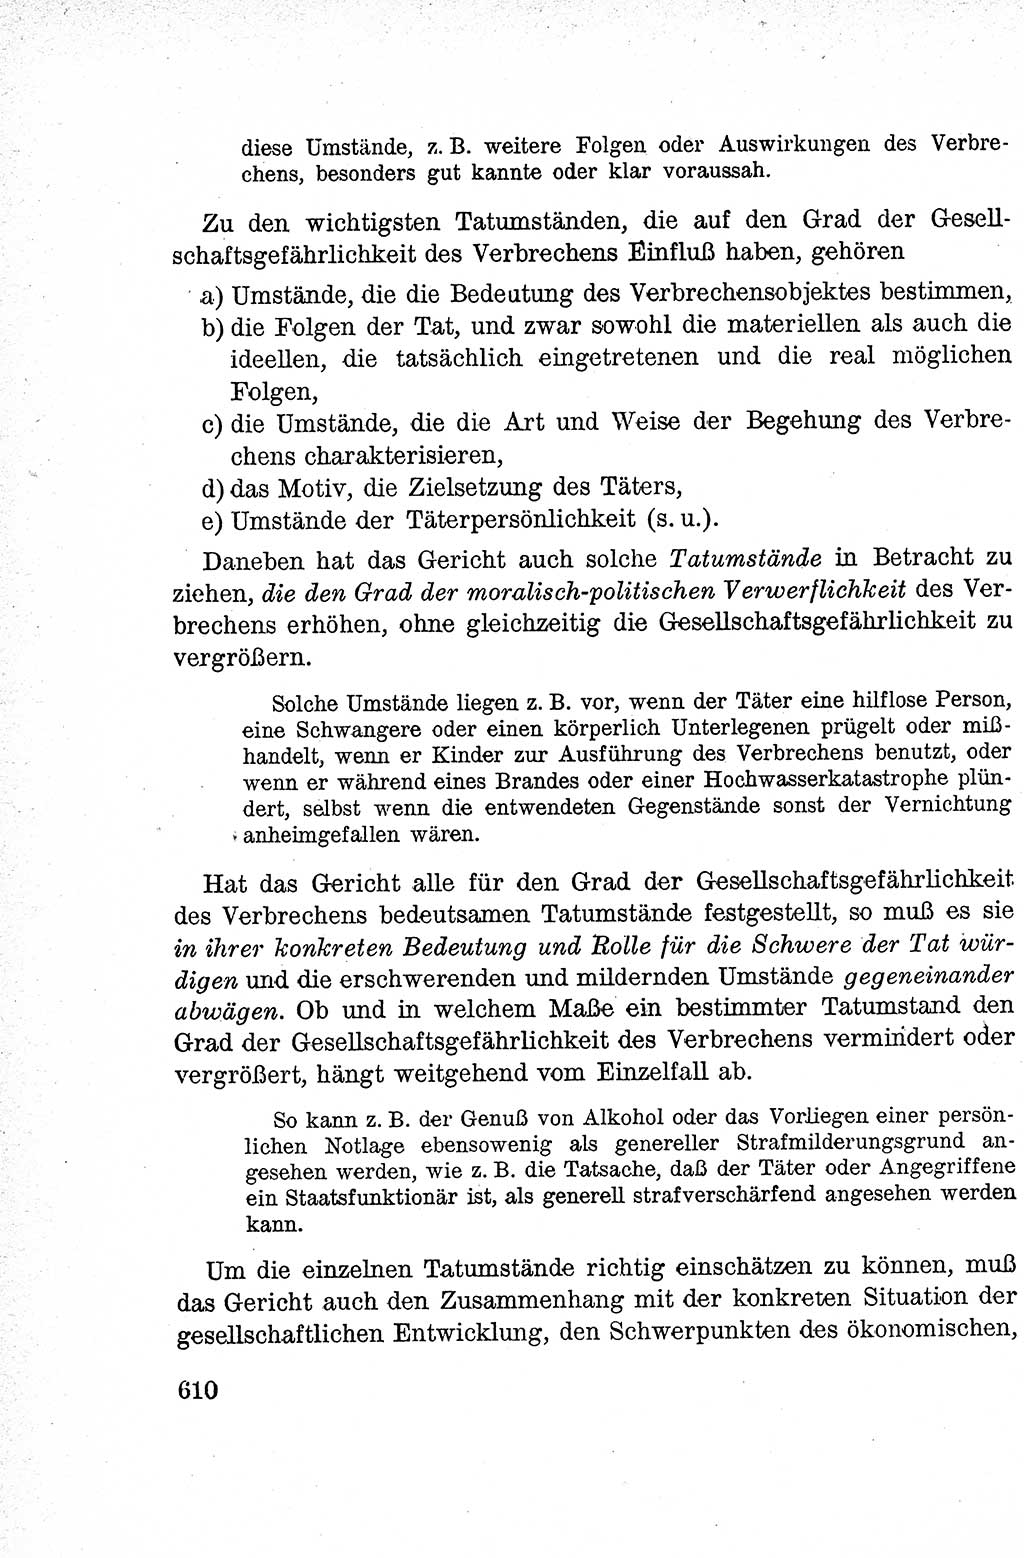 Lehrbuch des Strafrechts der Deutschen Demokratischen Republik (DDR), Allgemeiner Teil 1959, Seite 610 (Lb. Strafr. DDR AT 1959, S. 610)